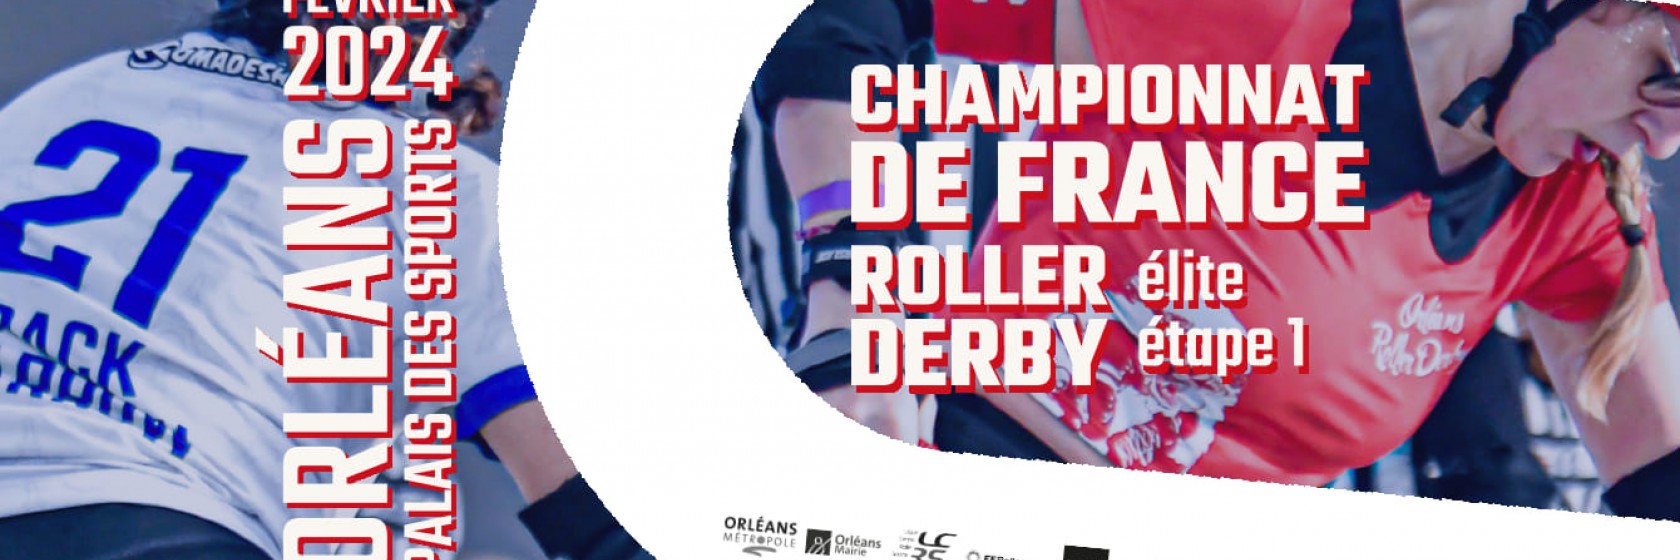 CHAMPIONNAT ROLLER DERBY ELITE FRANCE ORLEANS 2024